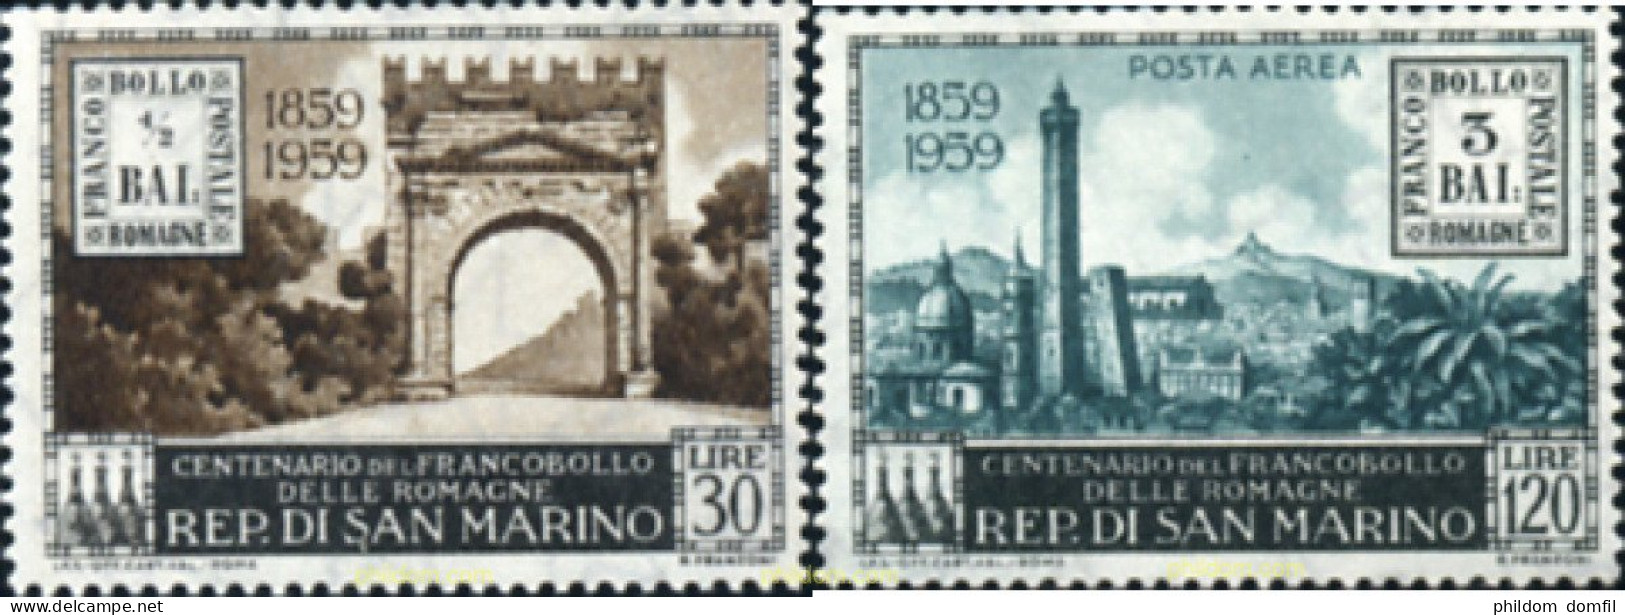 165719 MNH SAN MARINO 1959 CENTENARIO DEL PRIMER SELLO DE LA ROMAGNA - Used Stamps